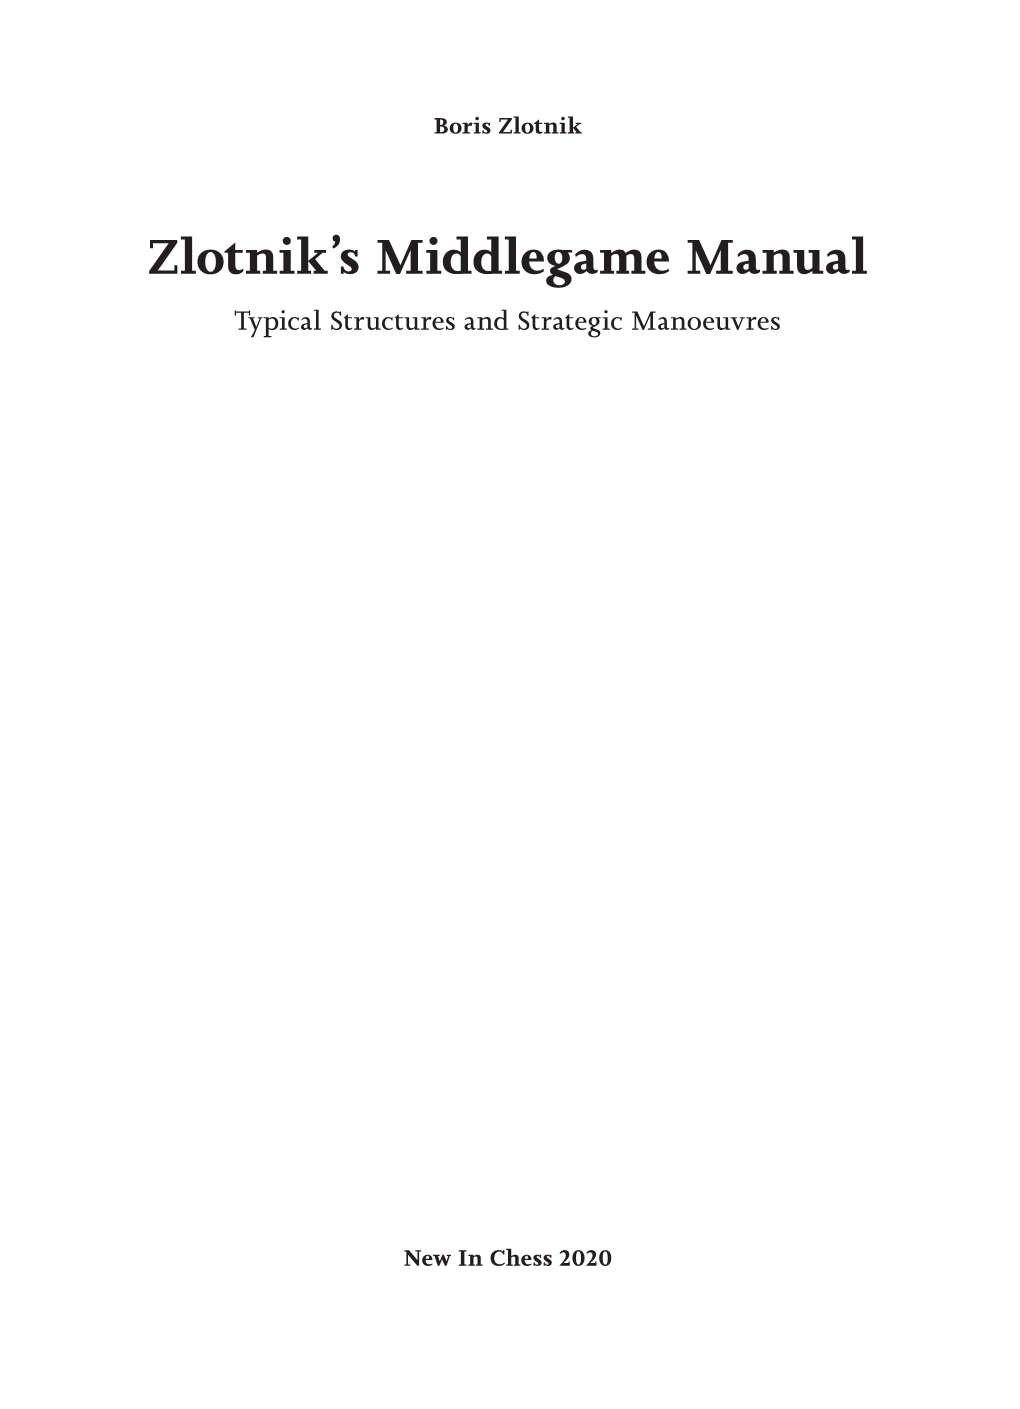 Zlotnik's Middlegame Manual.Indb